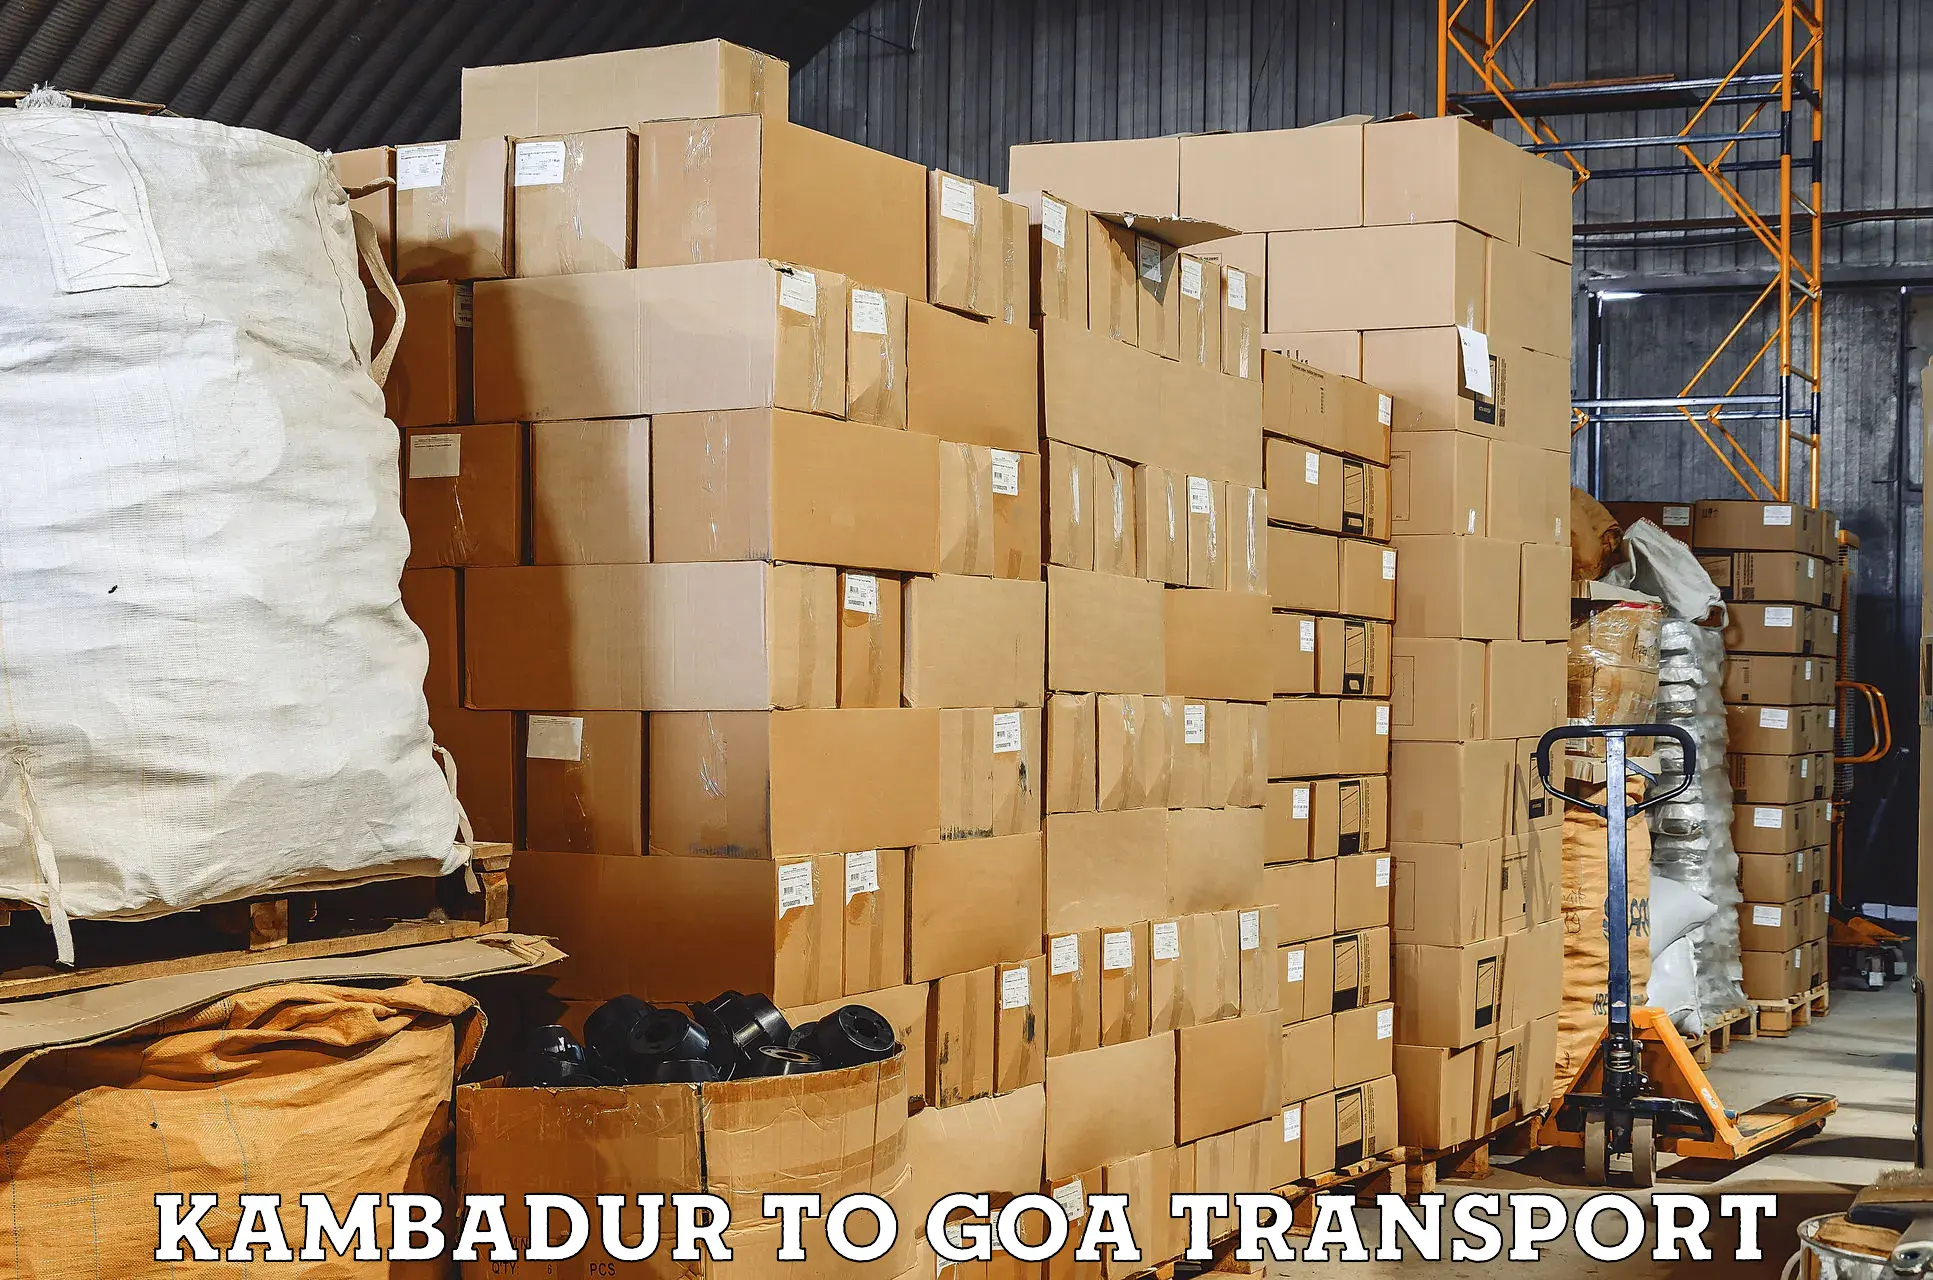 Vehicle transport services Kambadur to NIT Goa